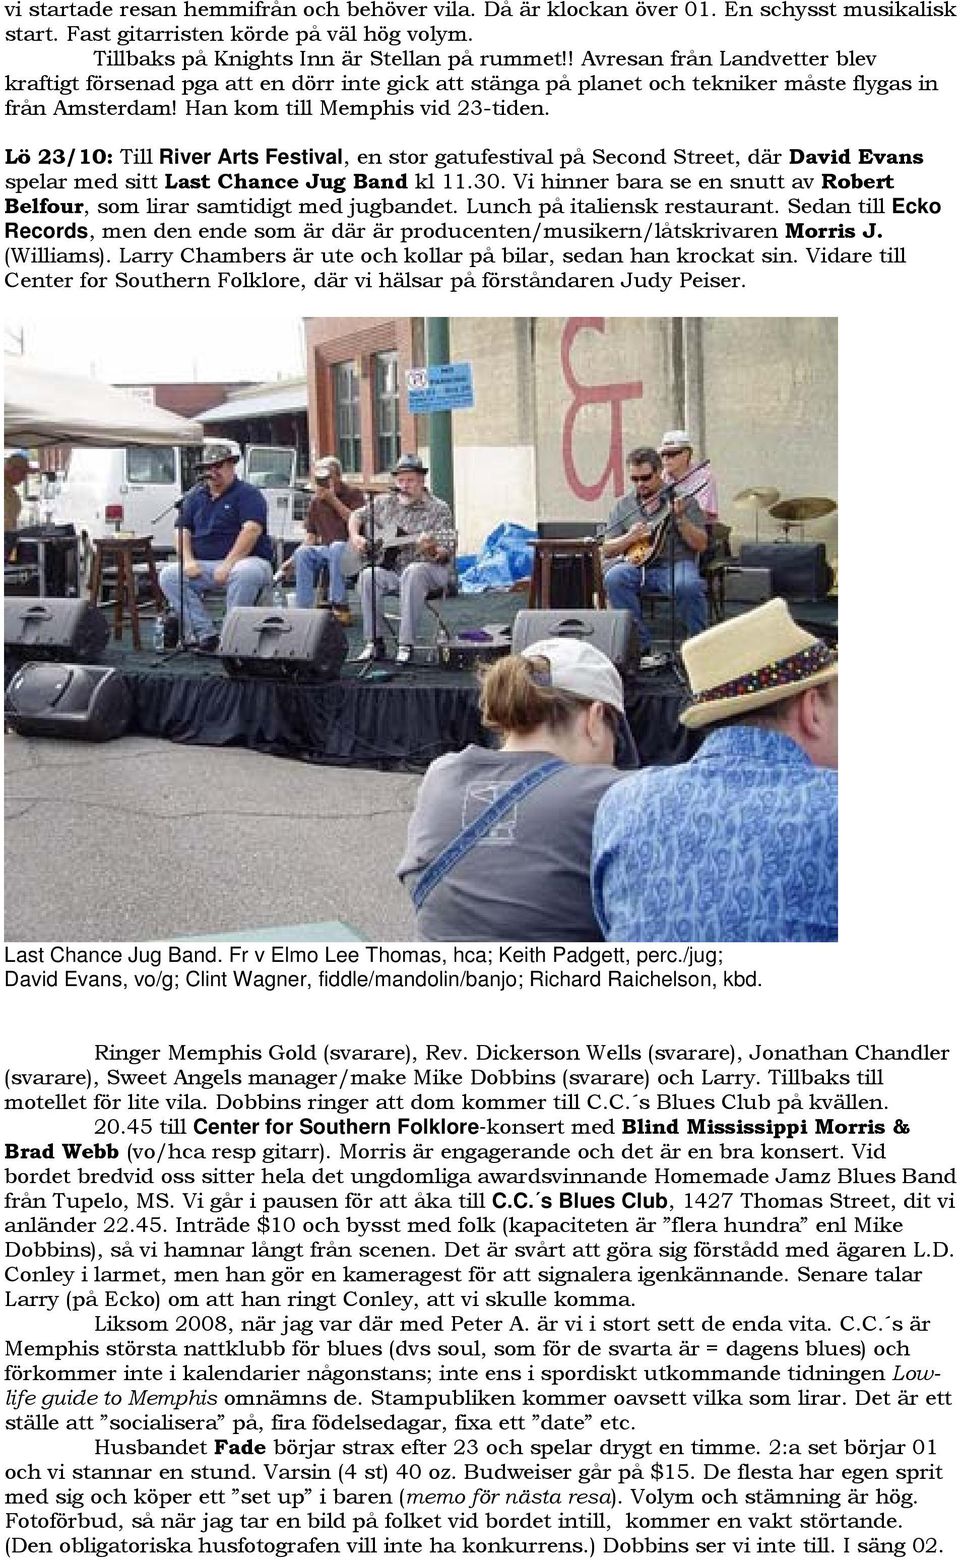 Lö 23/10: Till River Arts Festival, en stor gatufestival på Second Street, där David Evans spelar med sitt Last Chance Jug Band kl 11.30.